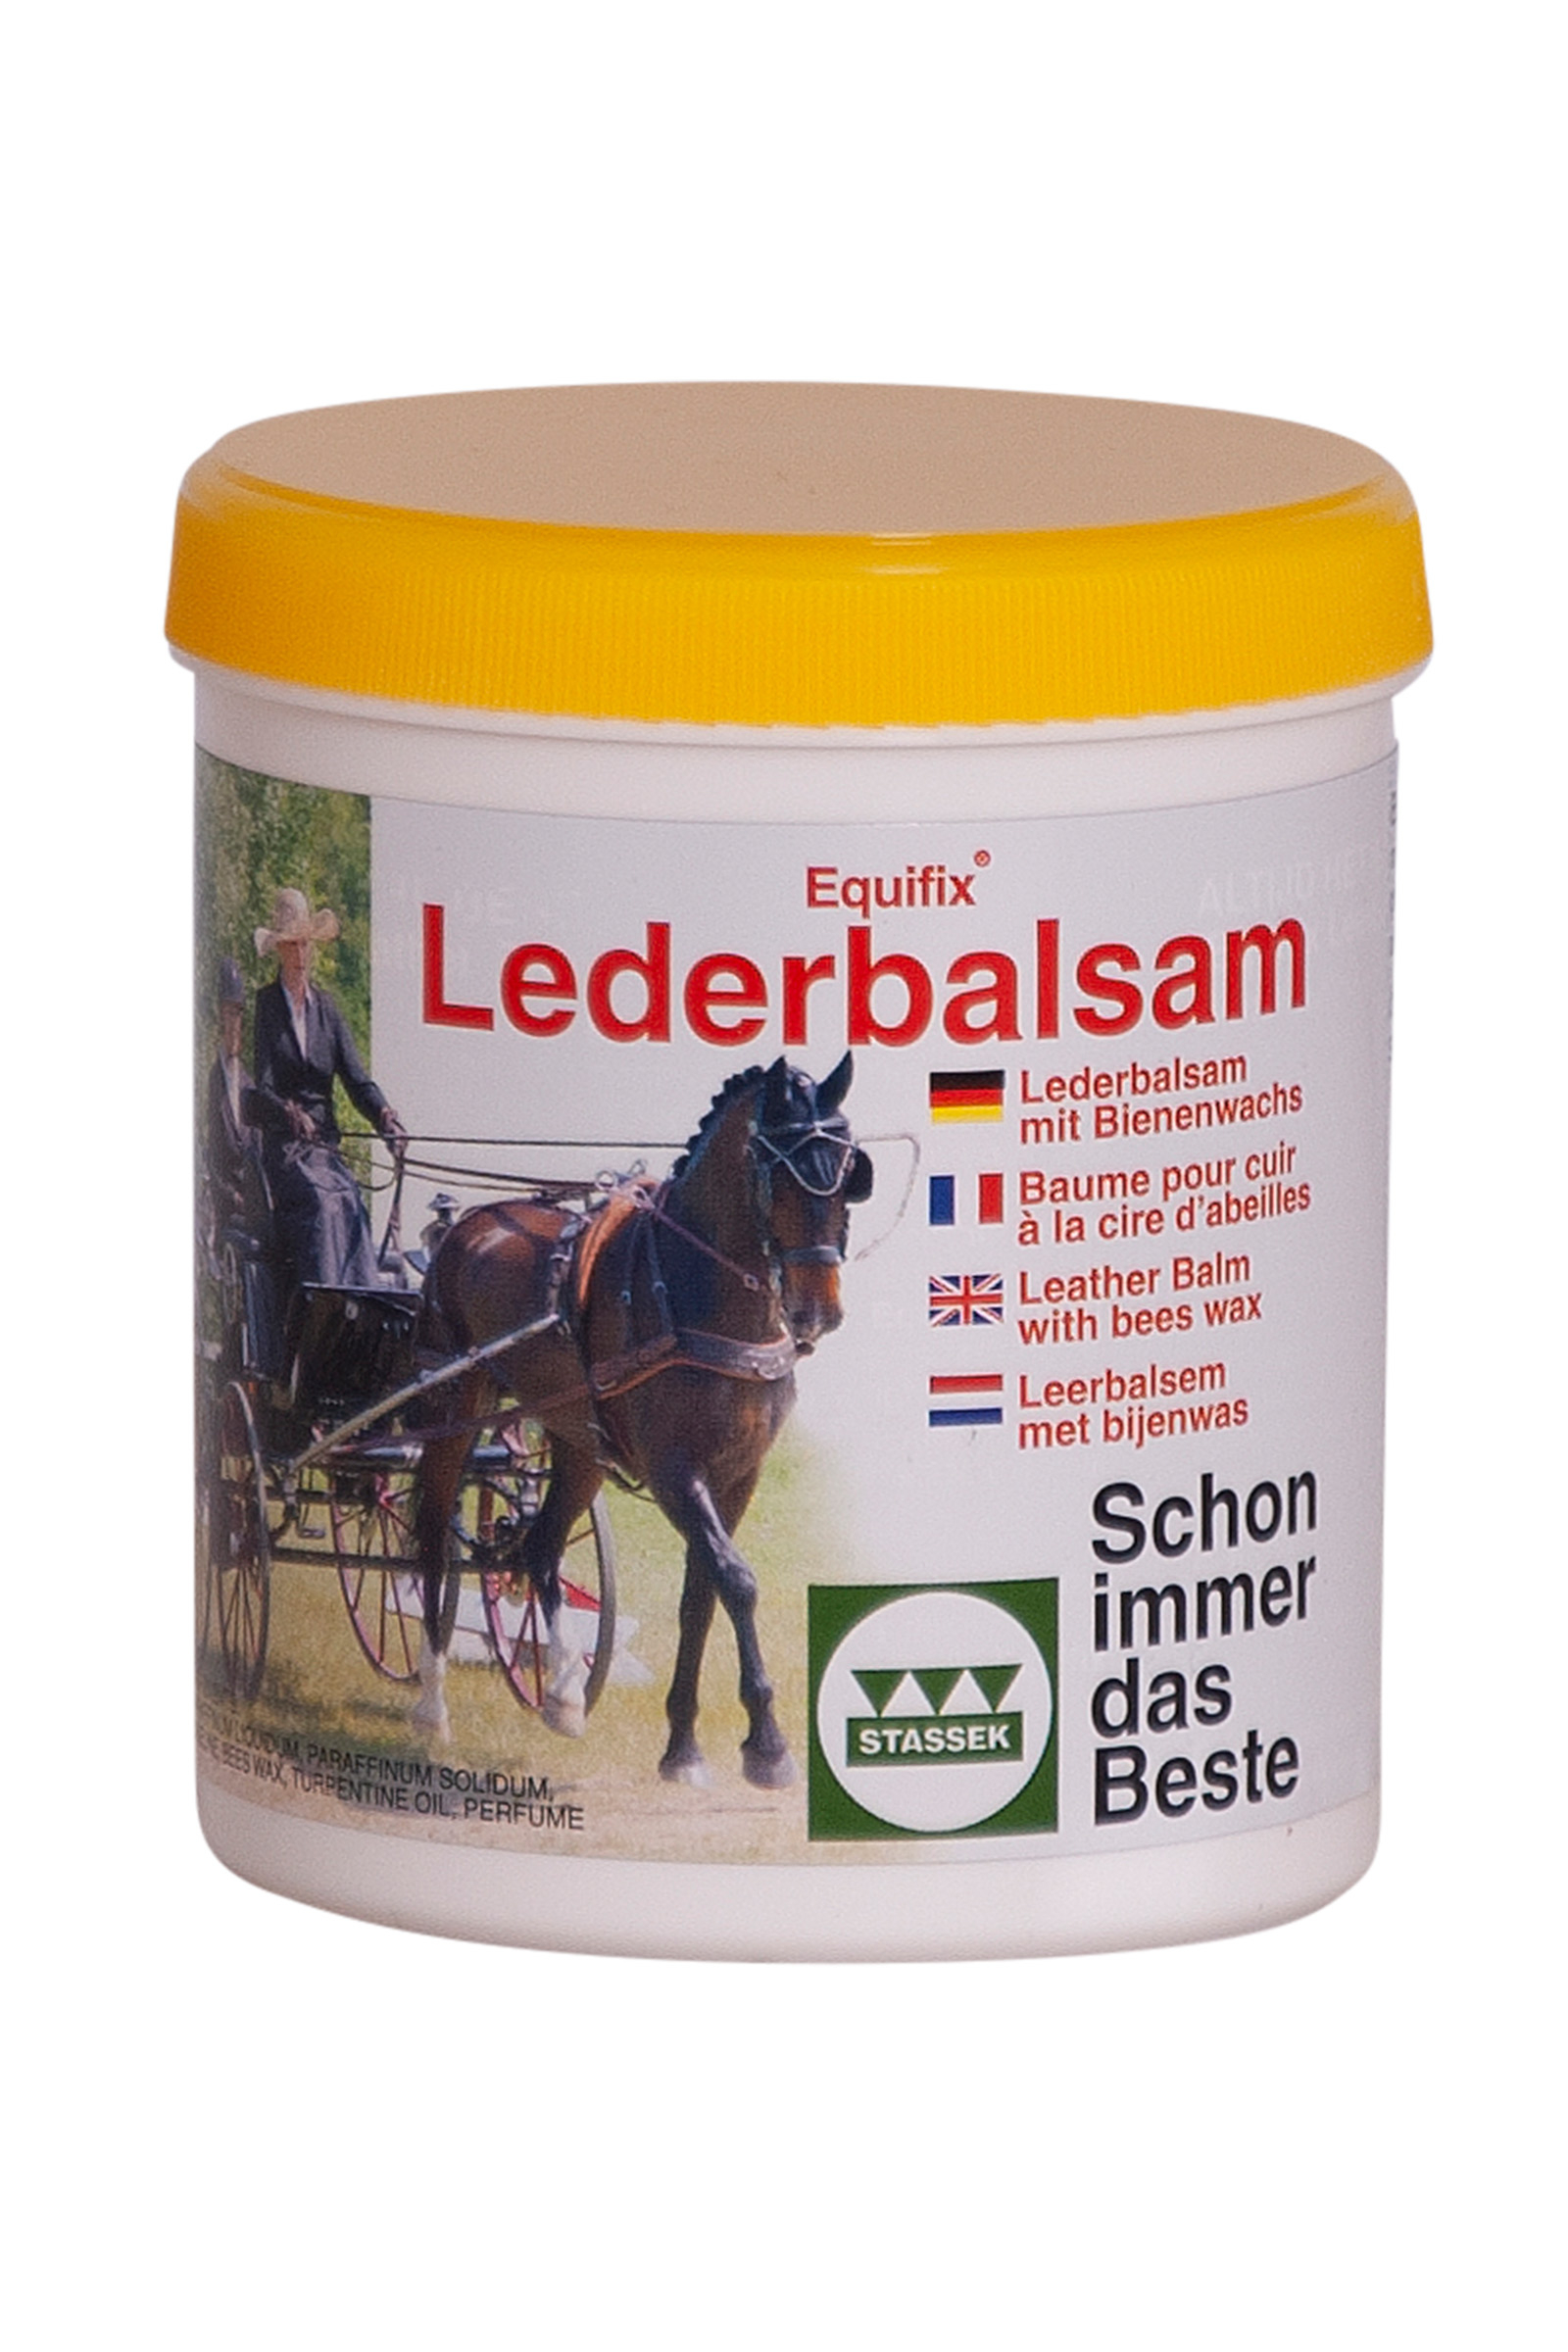 Bense & Eicke Brilliant Leather Cream, 250 ml - EquusVitalis Onlineshop